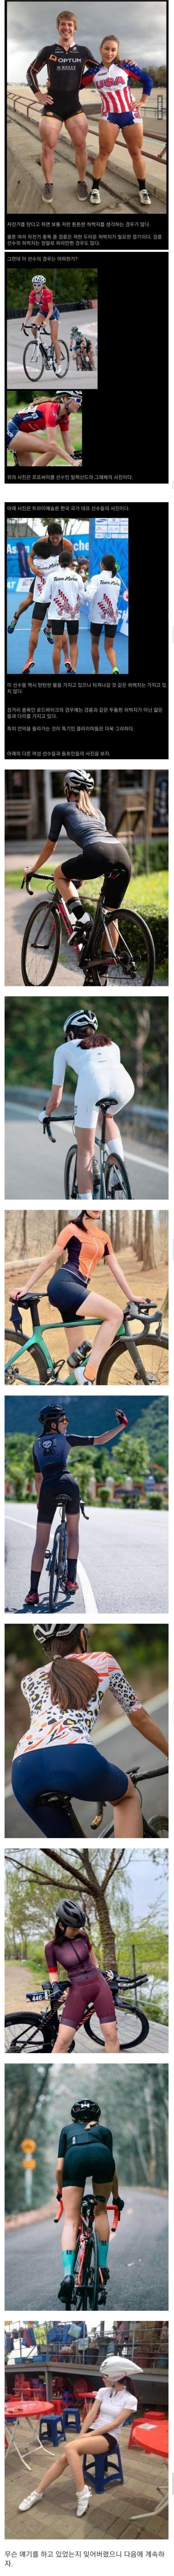 허벅지 단련하는데 자전거가 도움이 될까.jpg